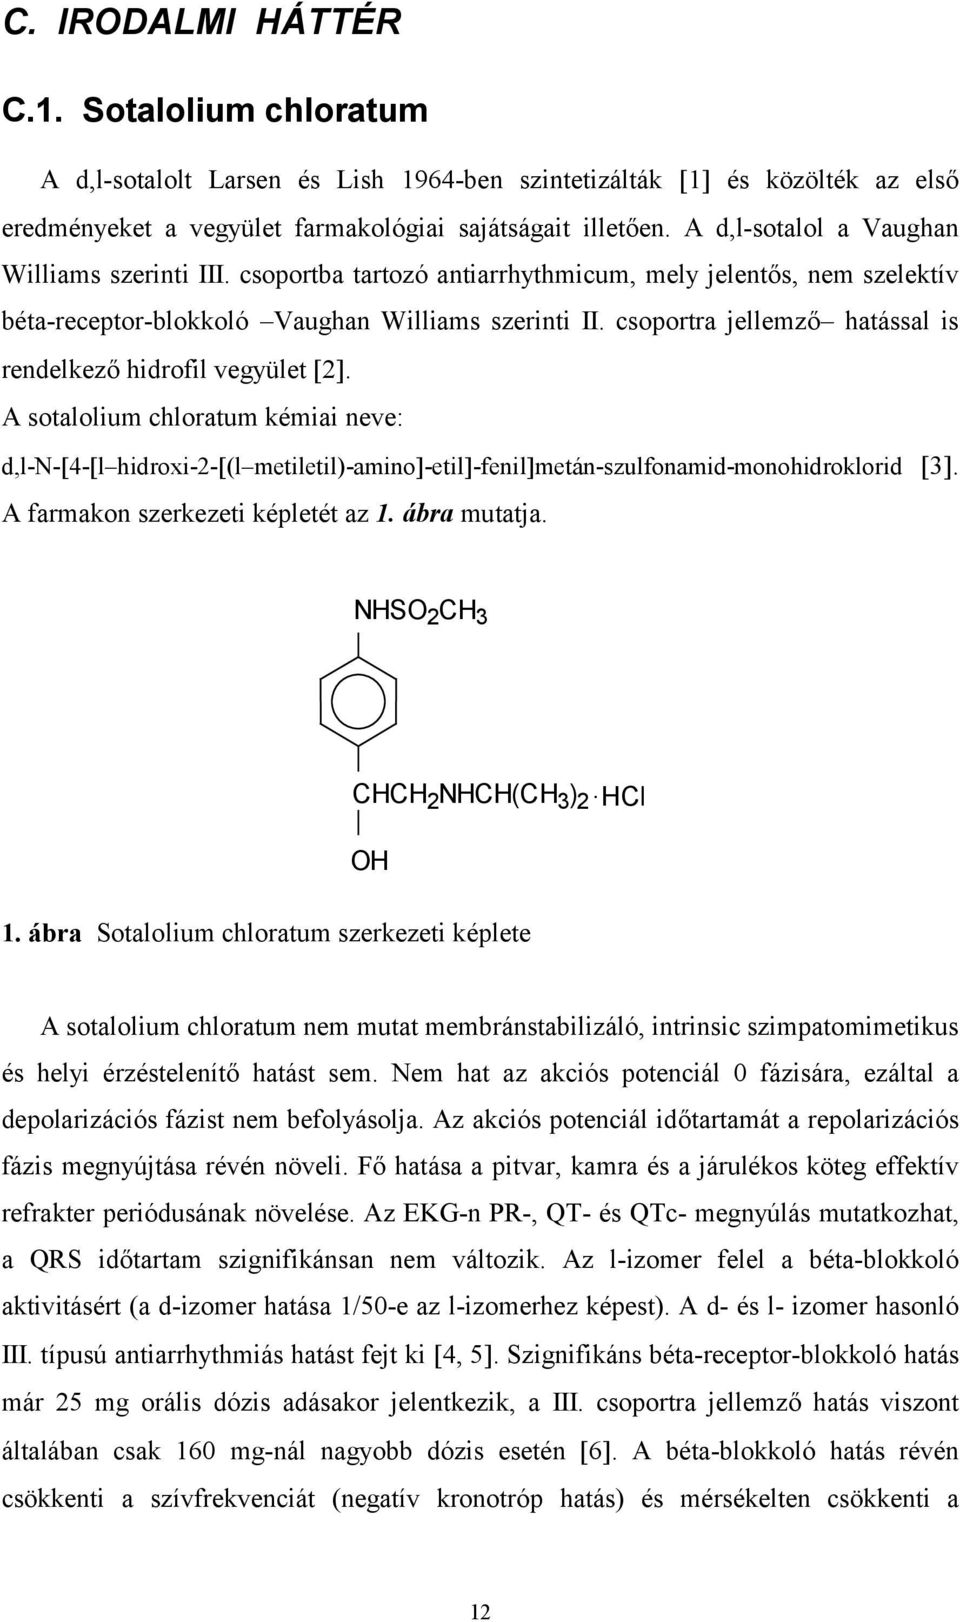 csoportra jellemző hatással is rendelkező hidrofil vegyület 2. A sotalolium chloratum kémiai neve: d,l-n- 4- l hidroxi-2- (l metiletil)-amino -etil -fenil metán-szulfonamid-monohidroklorid 3.